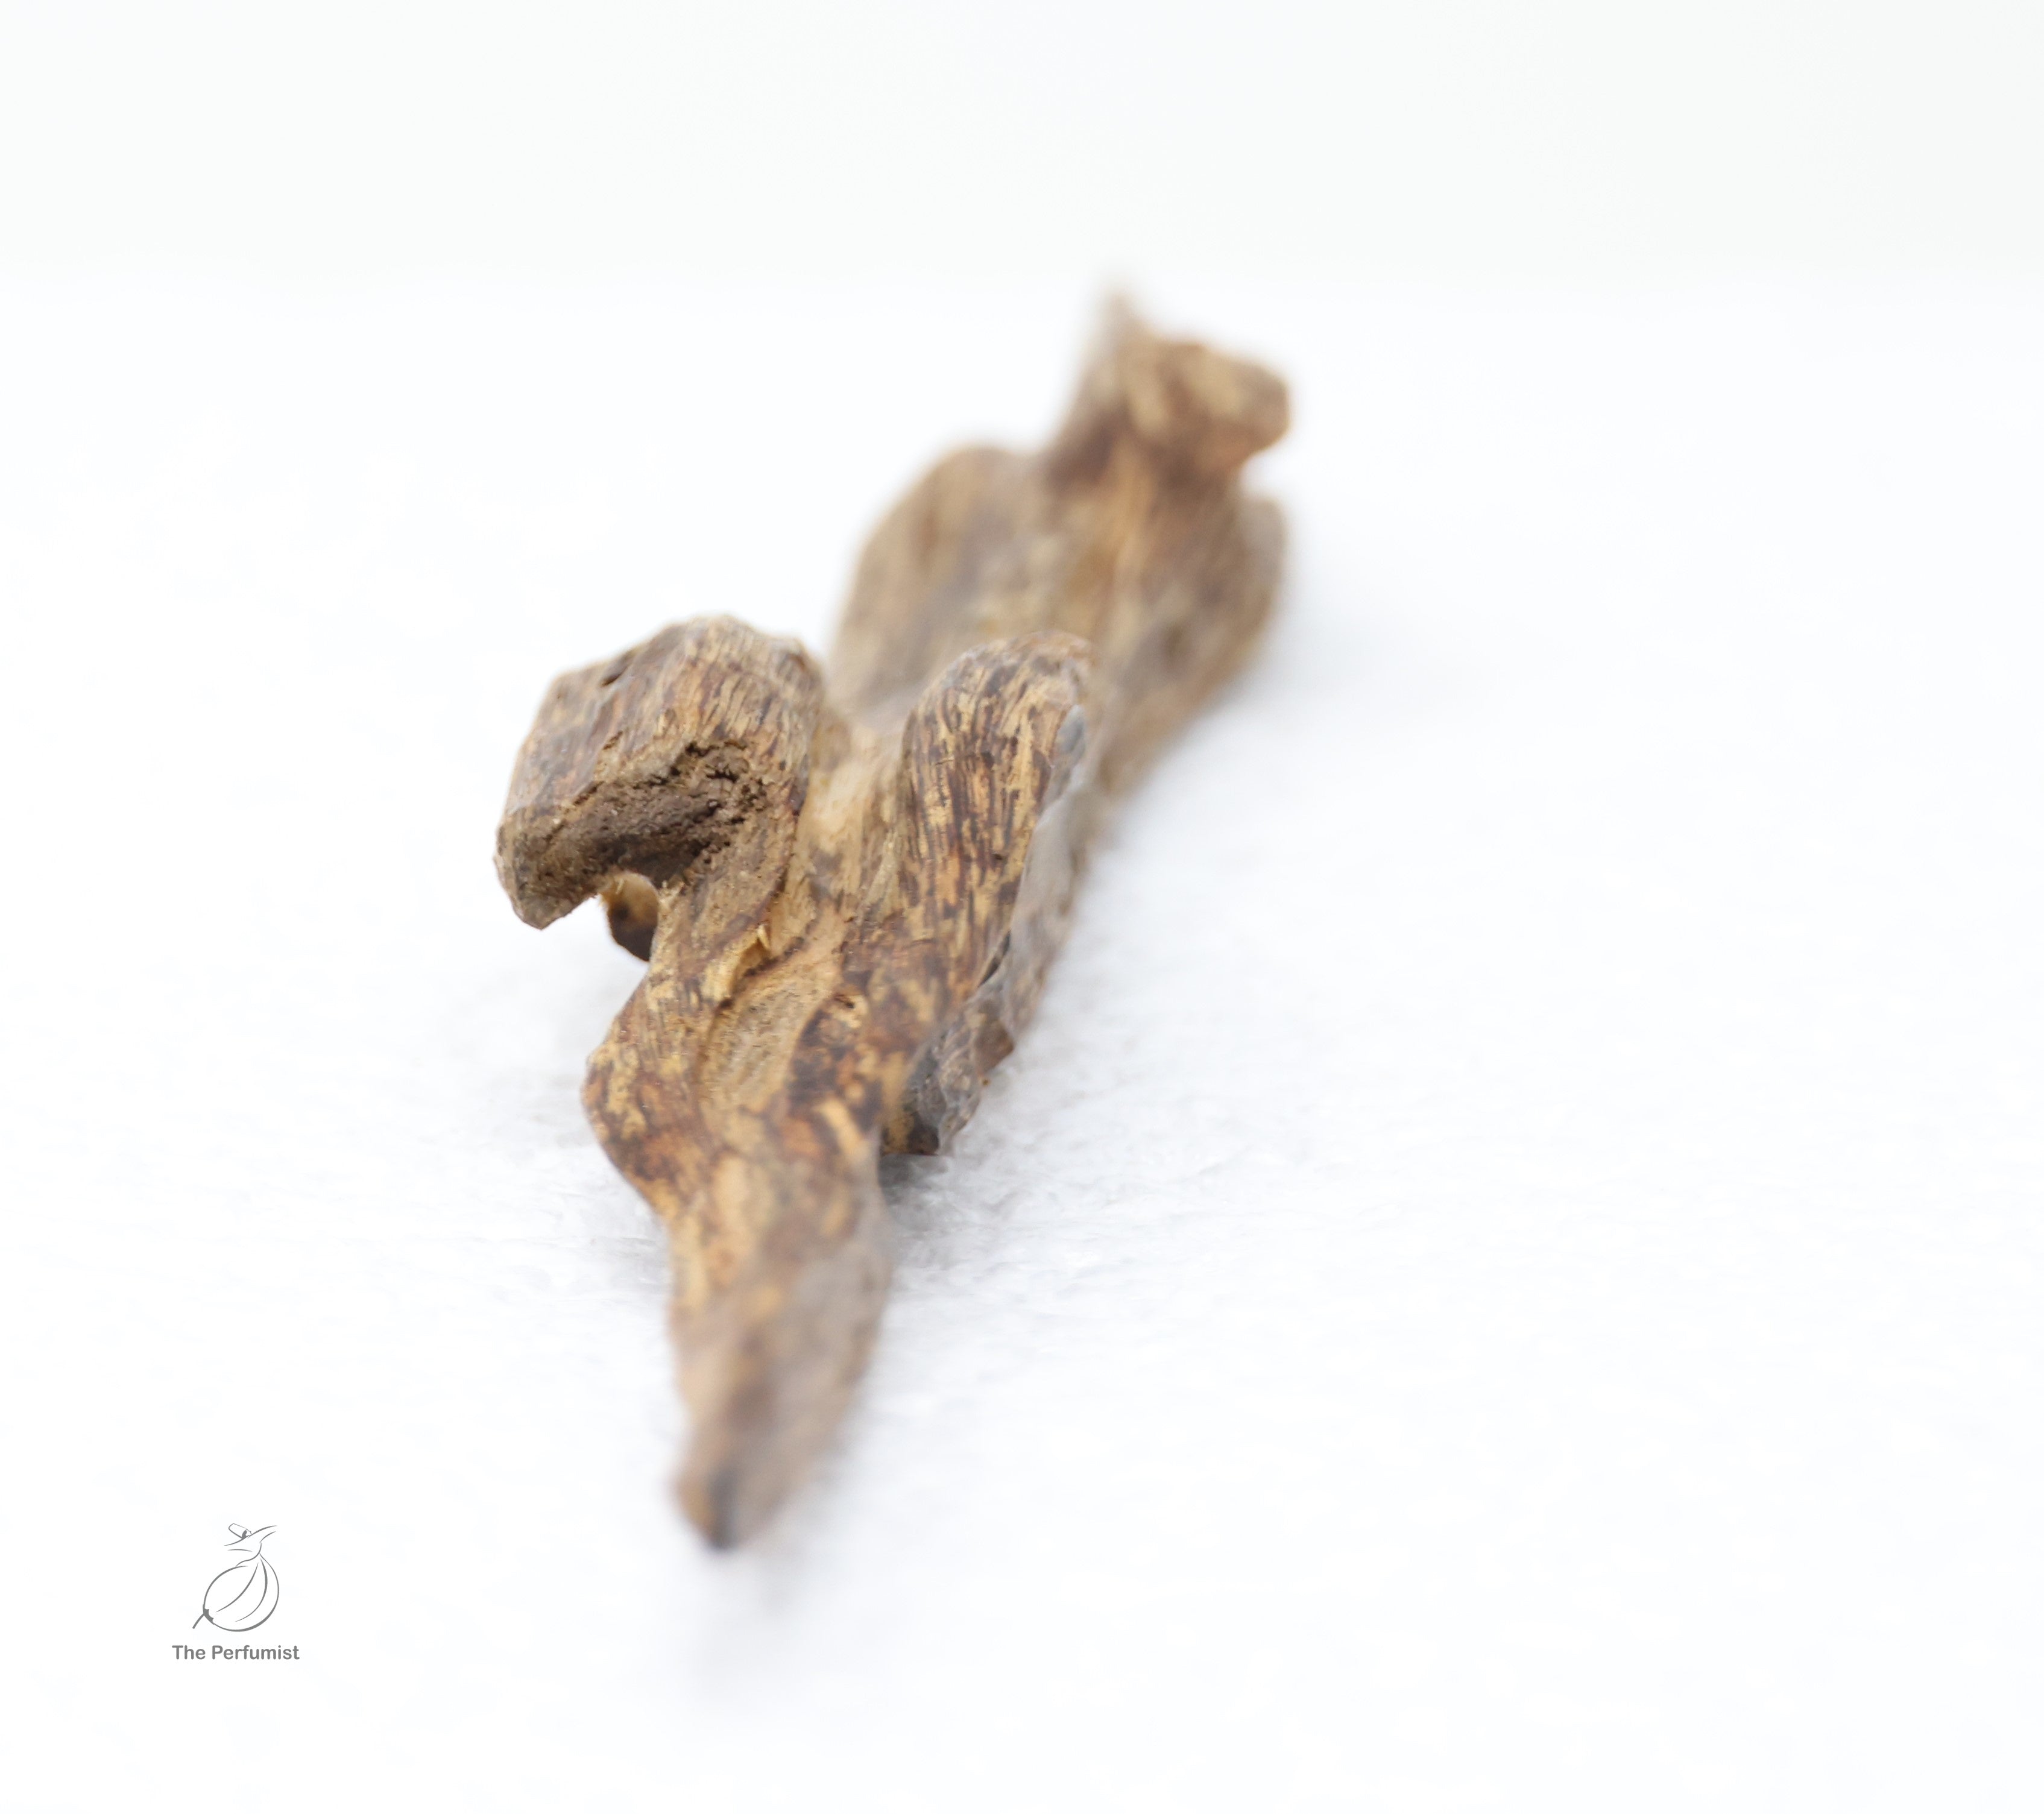 Superior wild Hainan agarwood “Shu Xin Yu” display Quality - theperfumist